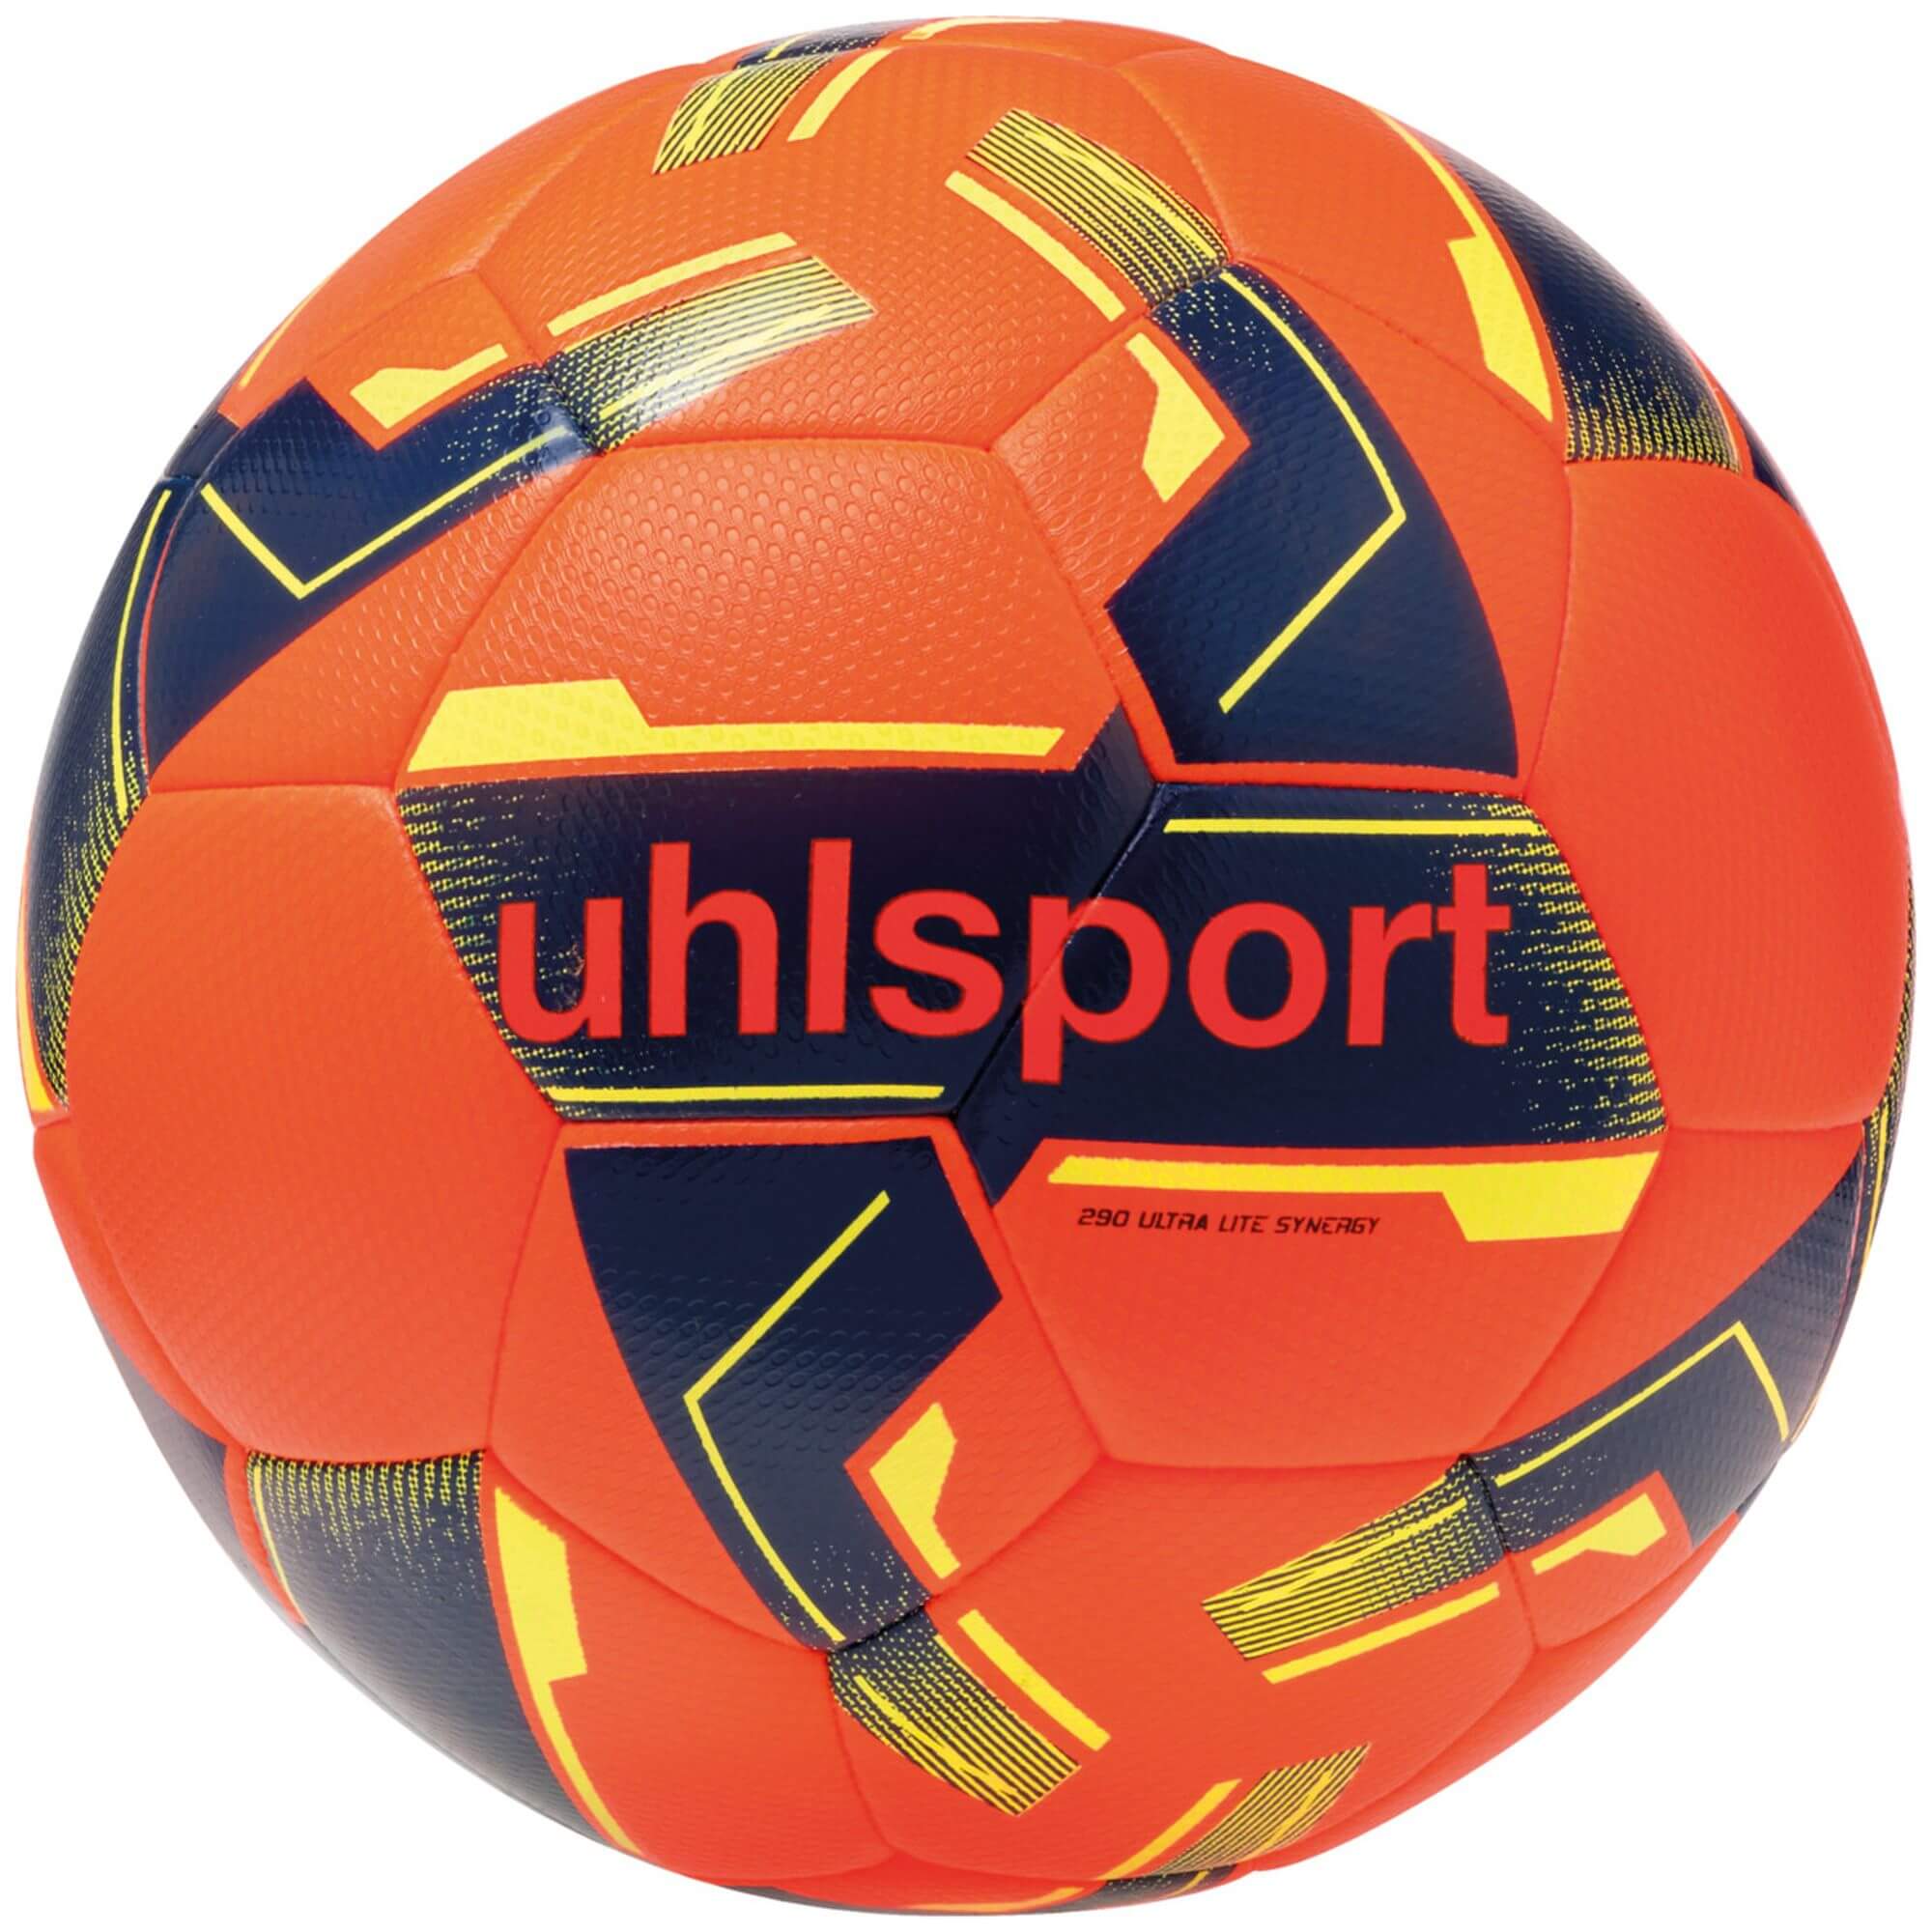 Uhlsport Spiel- und Trainingsball 290 Ultra Lite Synergy, Größe 4